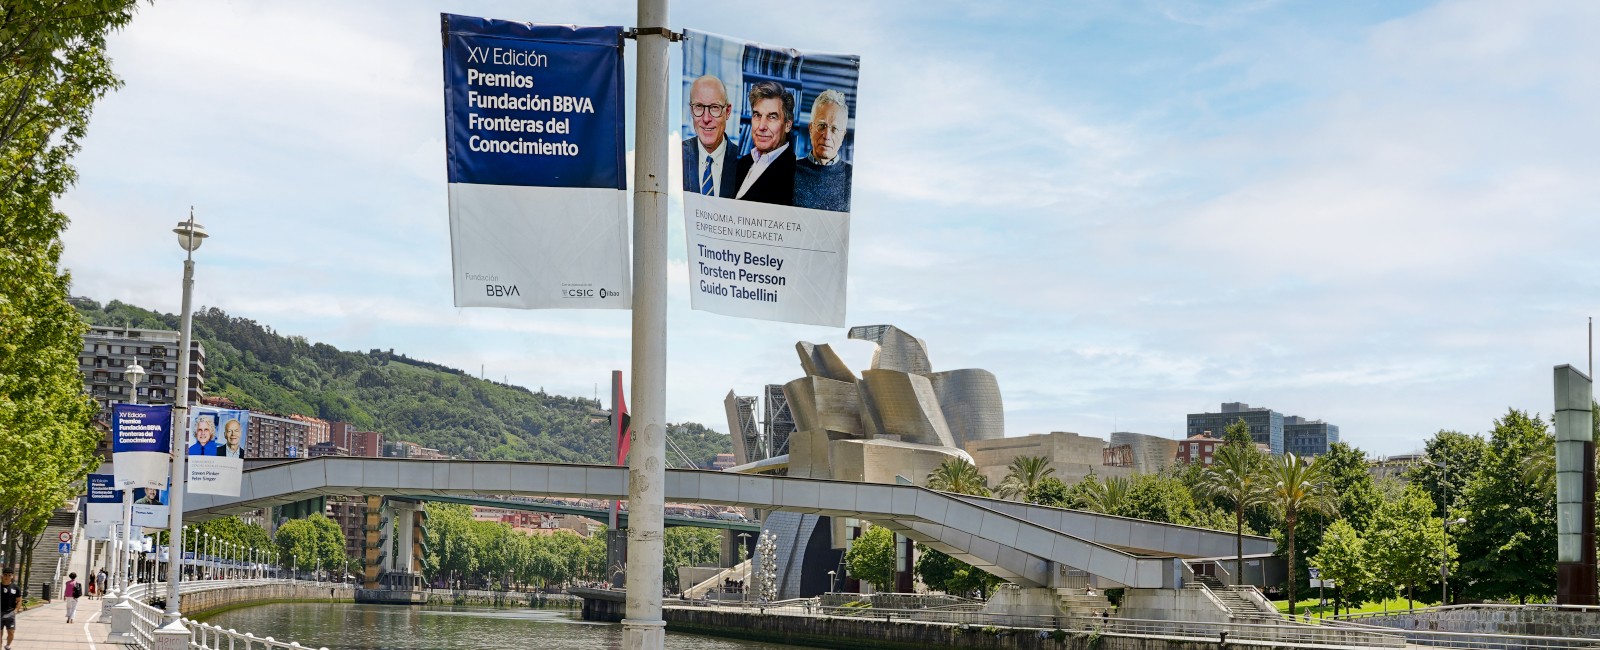 Banderolas de los Premios Fronteras del Conocimiento sobre la ría de Bilbao